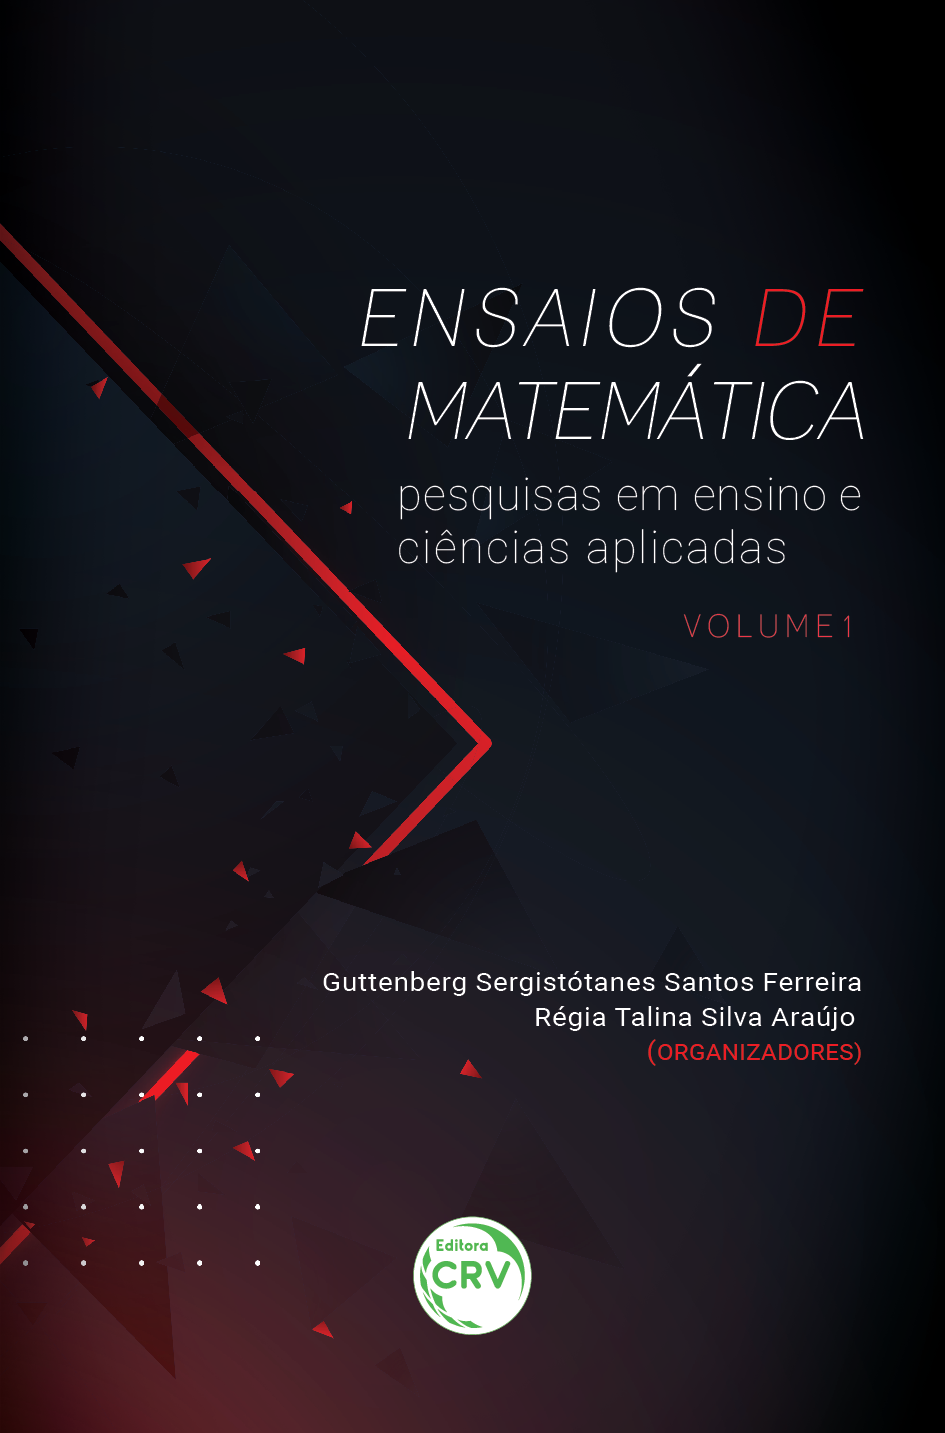 ENSAIOS DE MATEMÁTICA:<br> pesquisas em ensino e ciências aplicadas<br> Coleção Ensaios de matemática – Volume 1